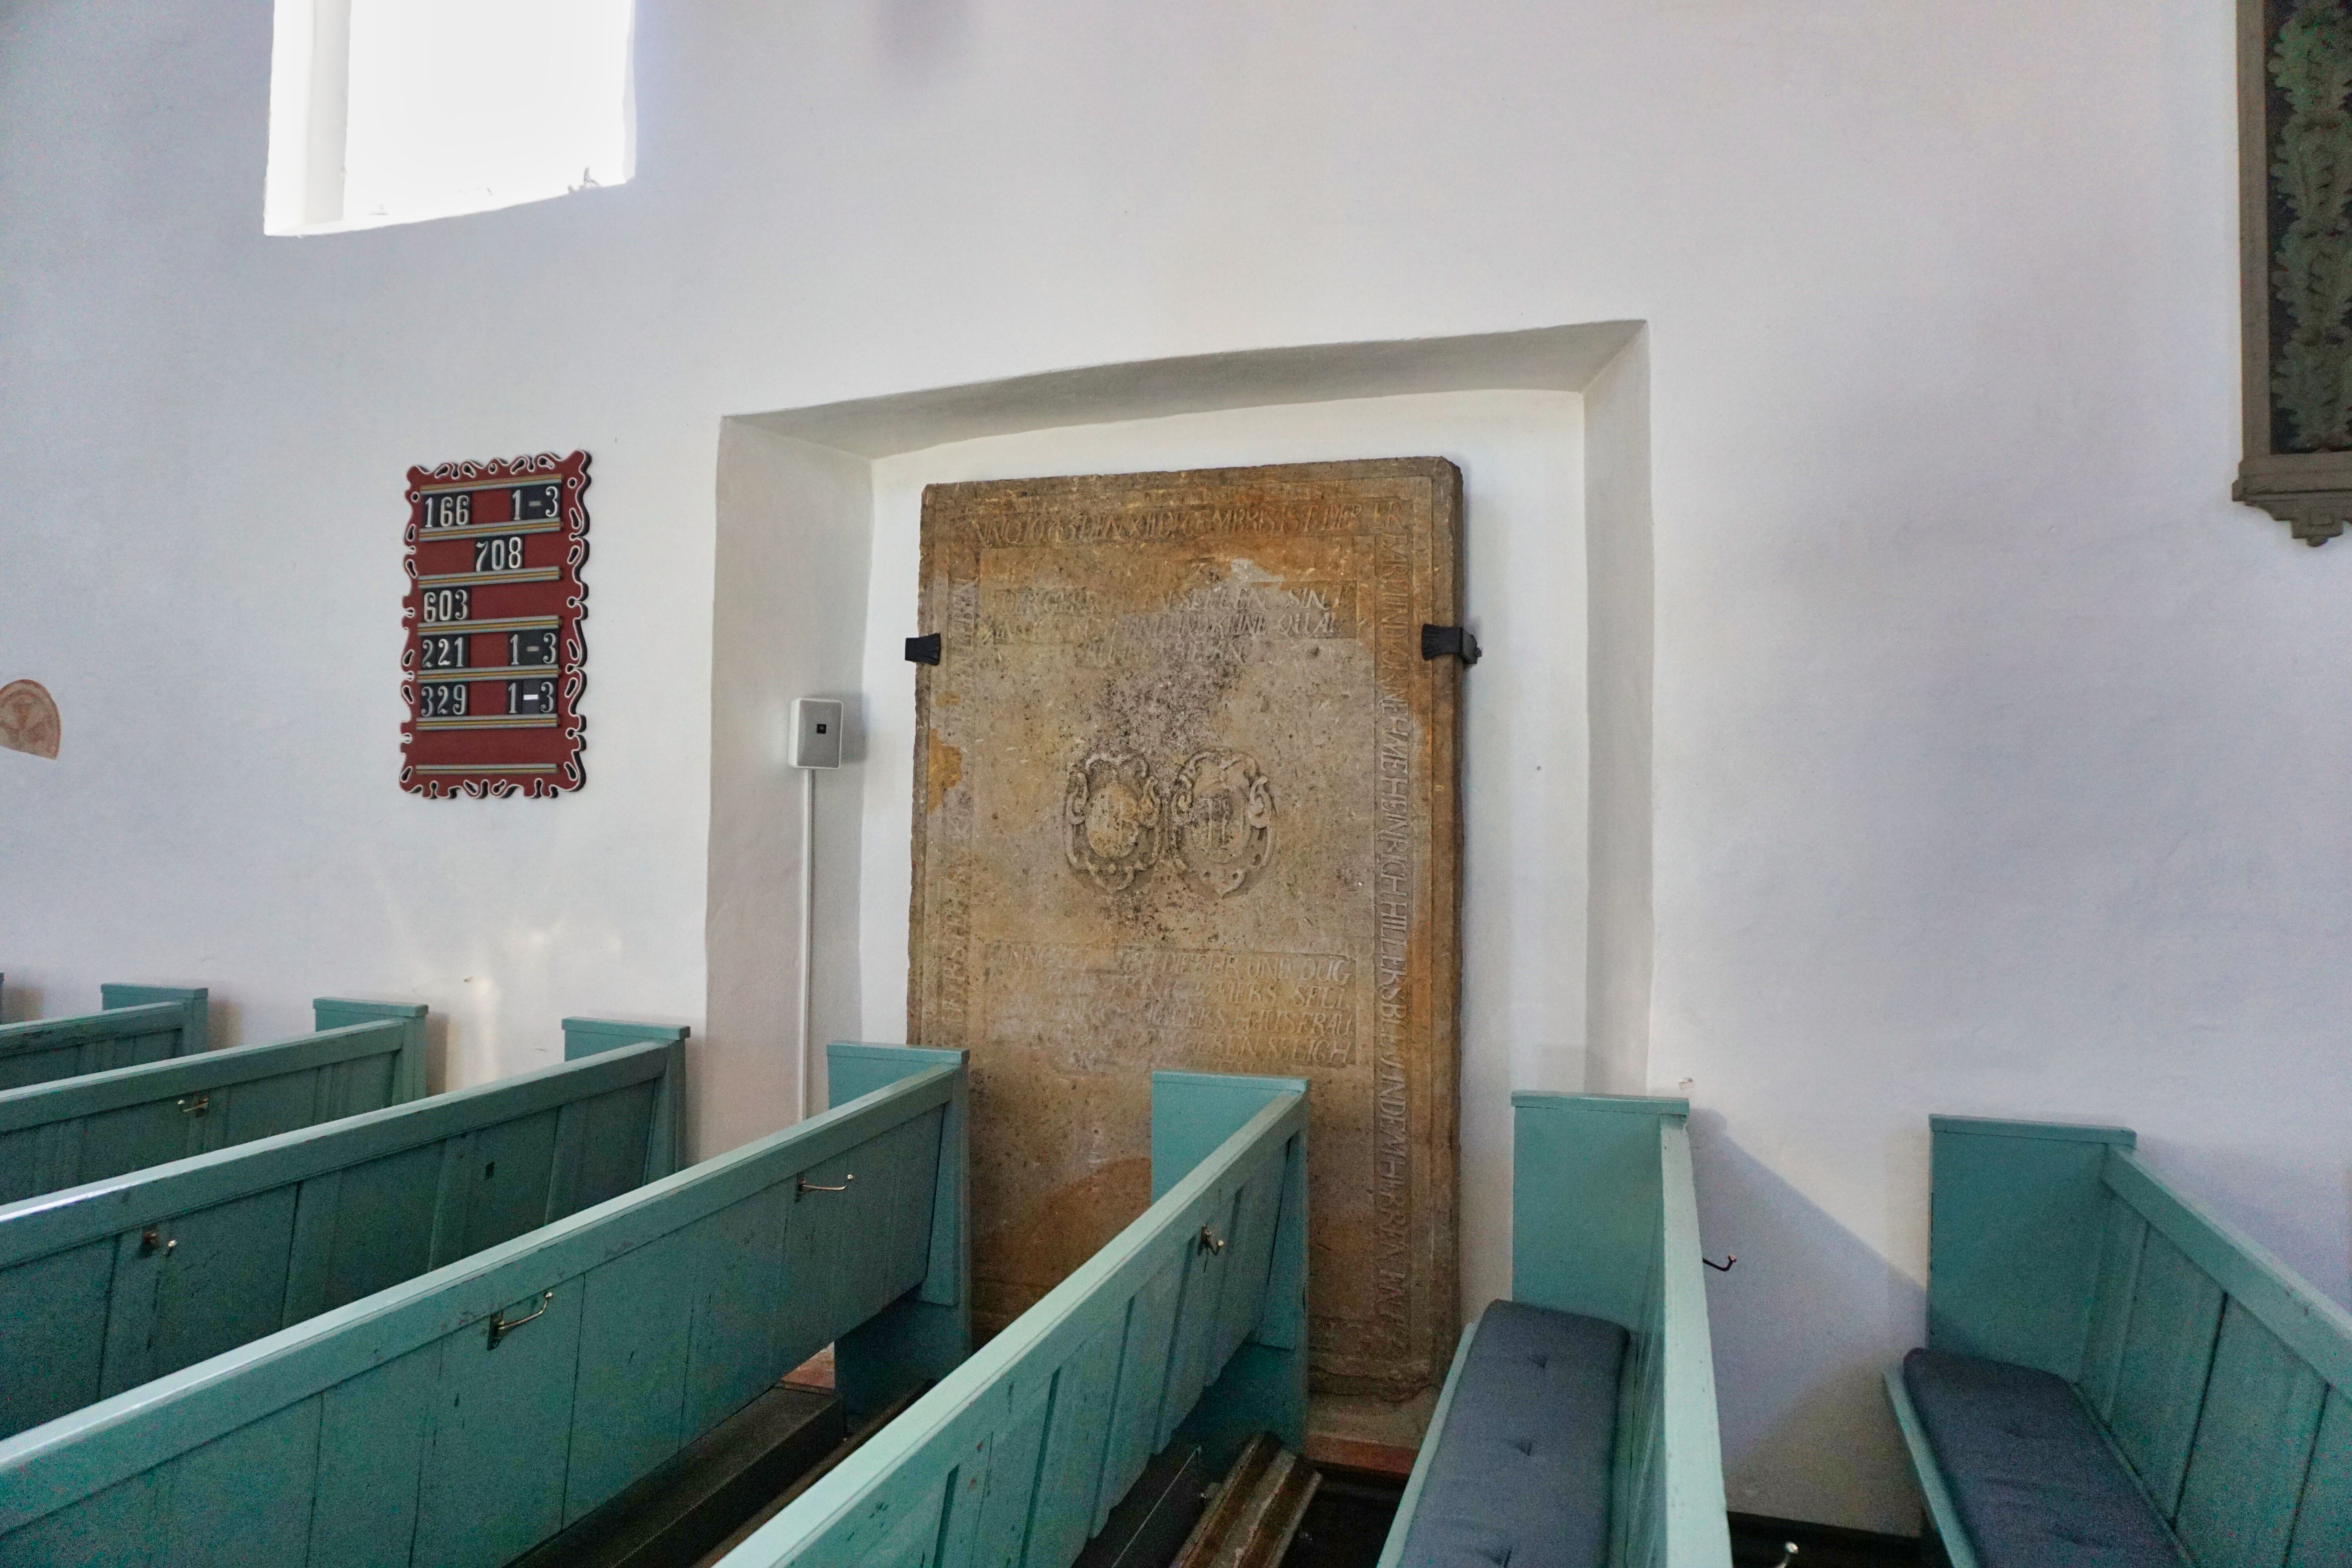 Grabplatten in der St. Mauritius-Kirche in Horsten, Friedeburg.
